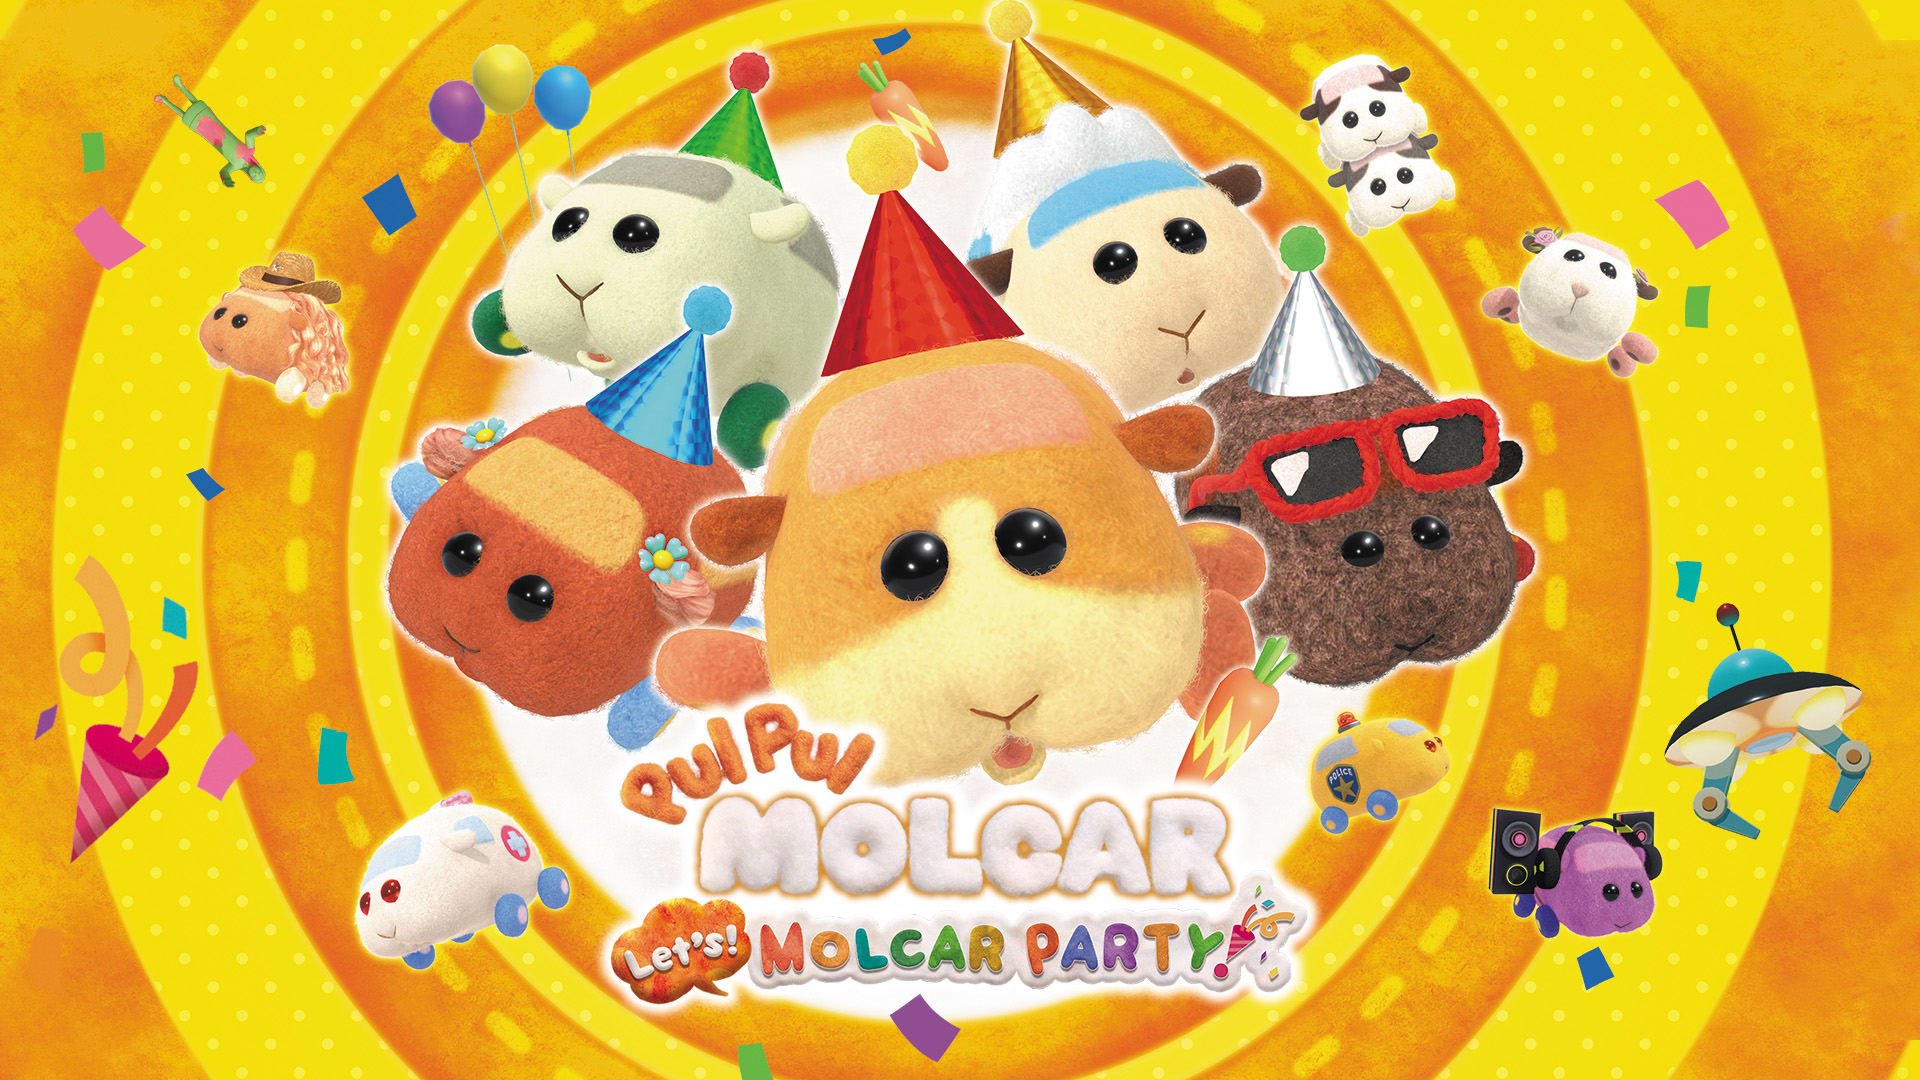 Pui Pui Molcar Let's! Molcar Party! 1